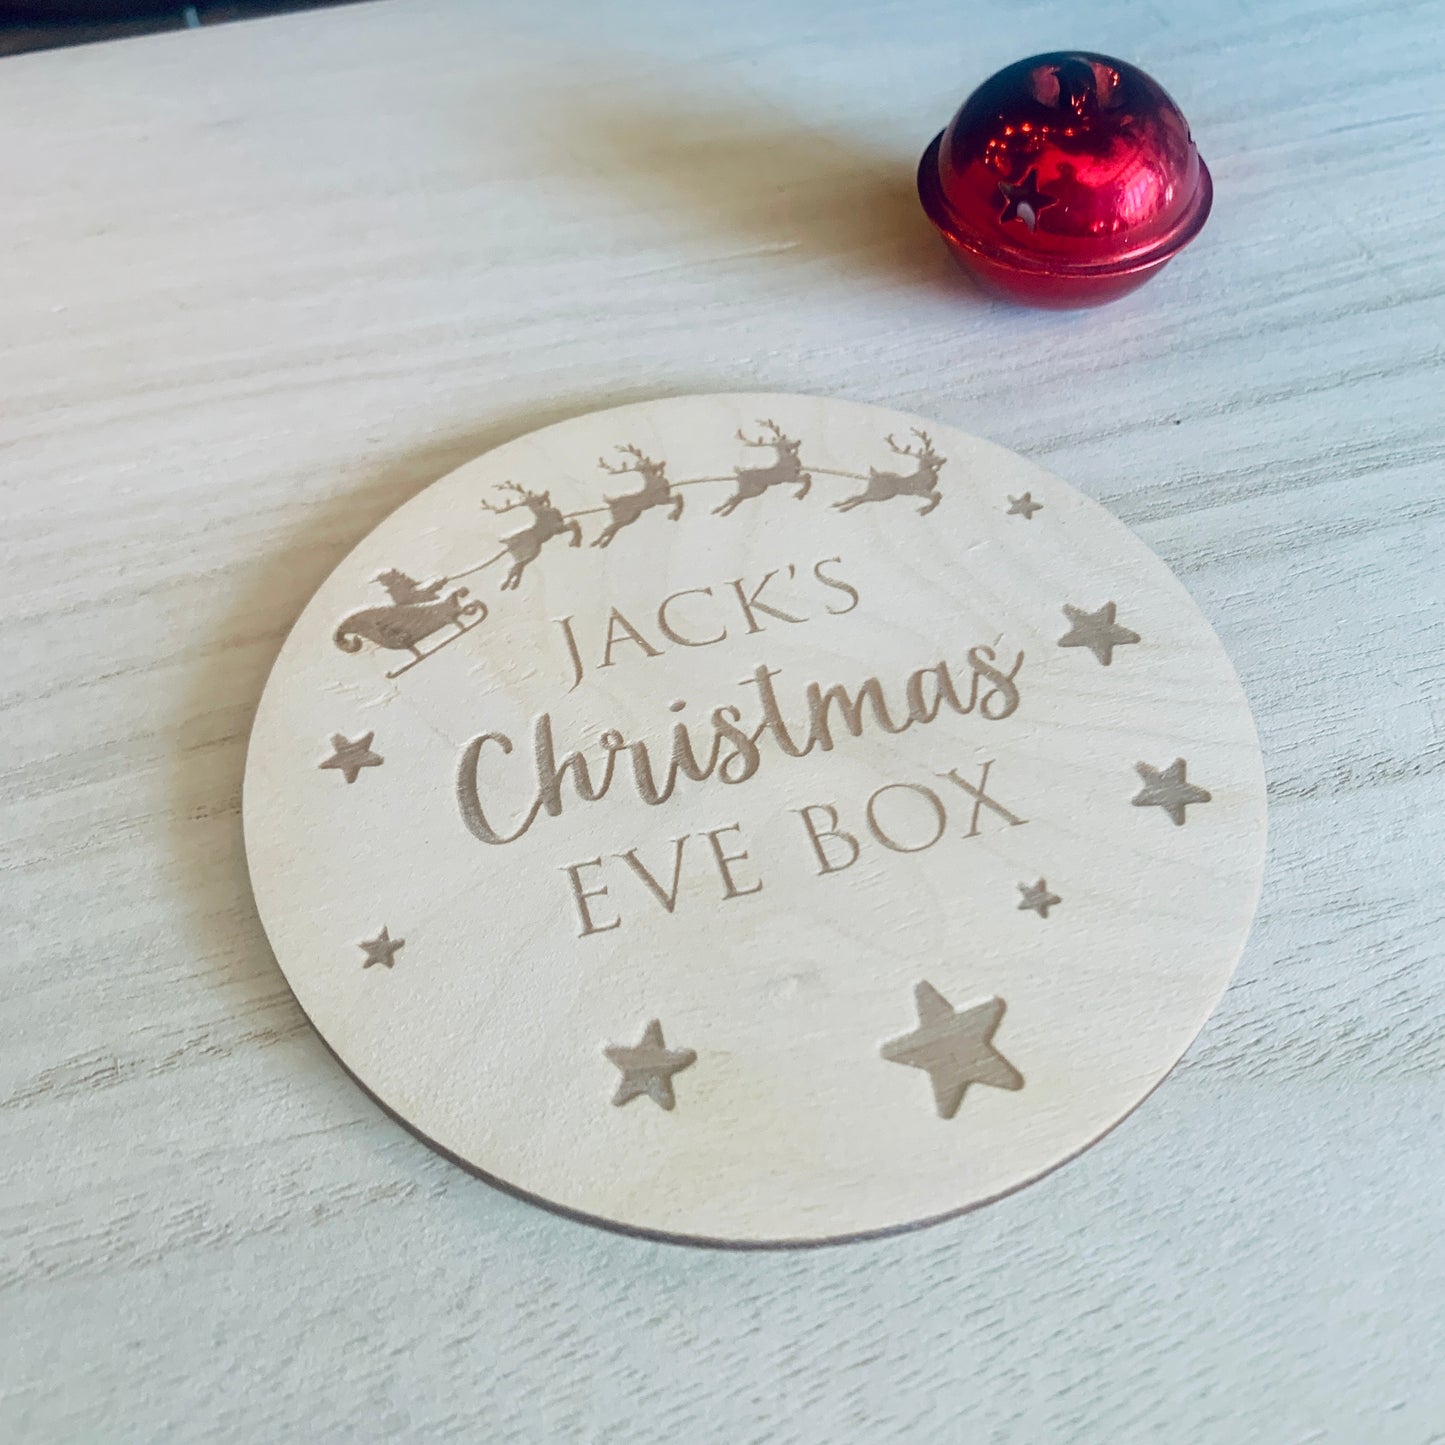 Personalised Christmas Eve Box Topper Circular Santa Design